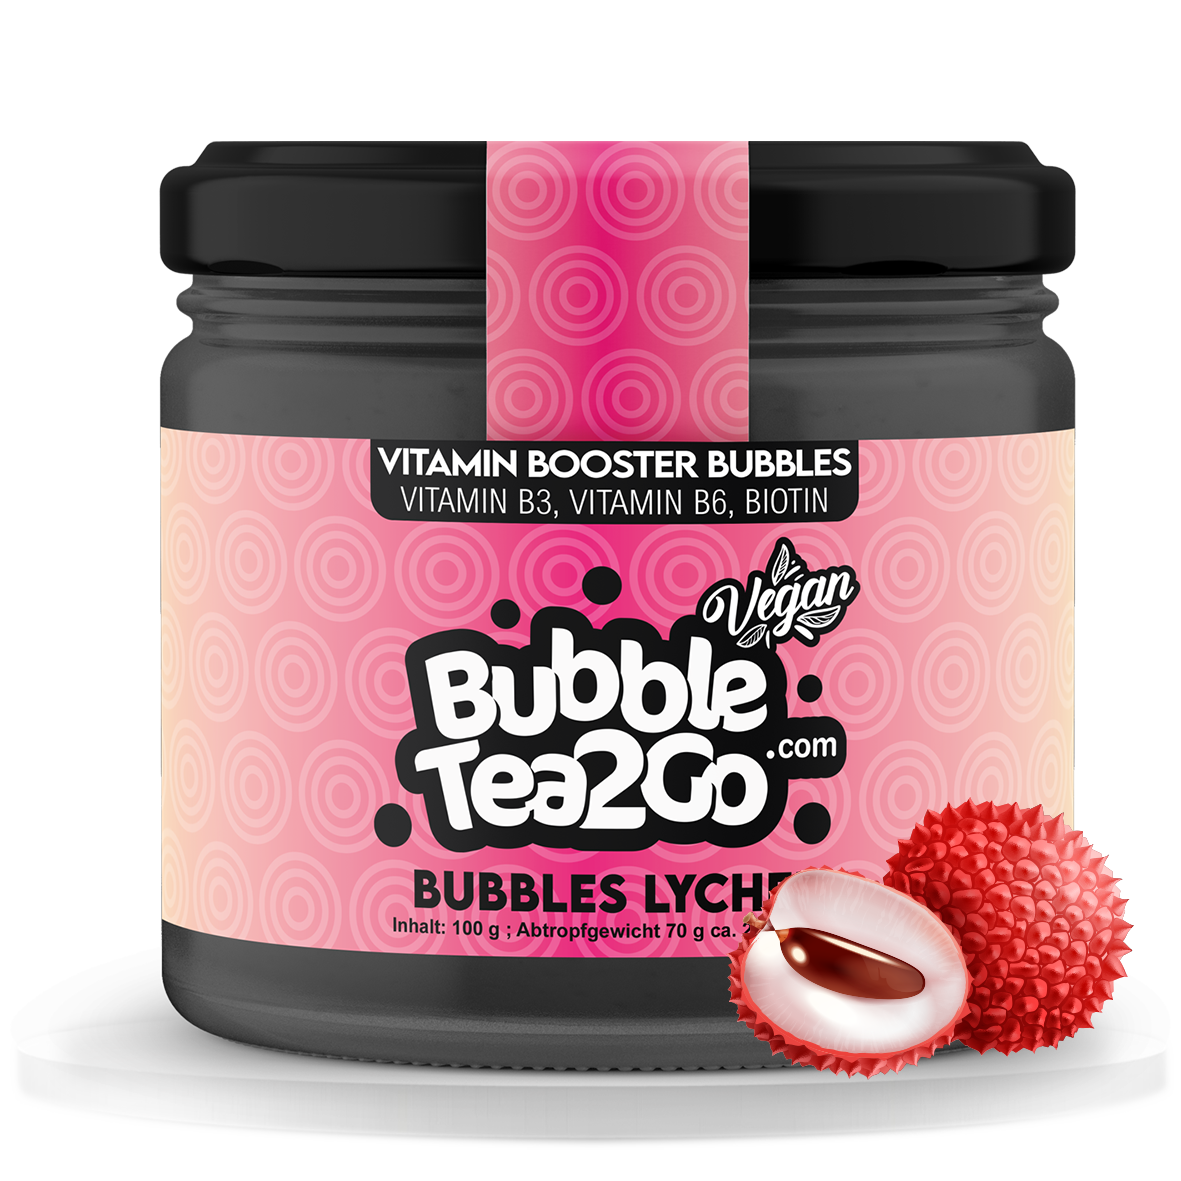 Bubbles - Litchi 2 servings (120g)